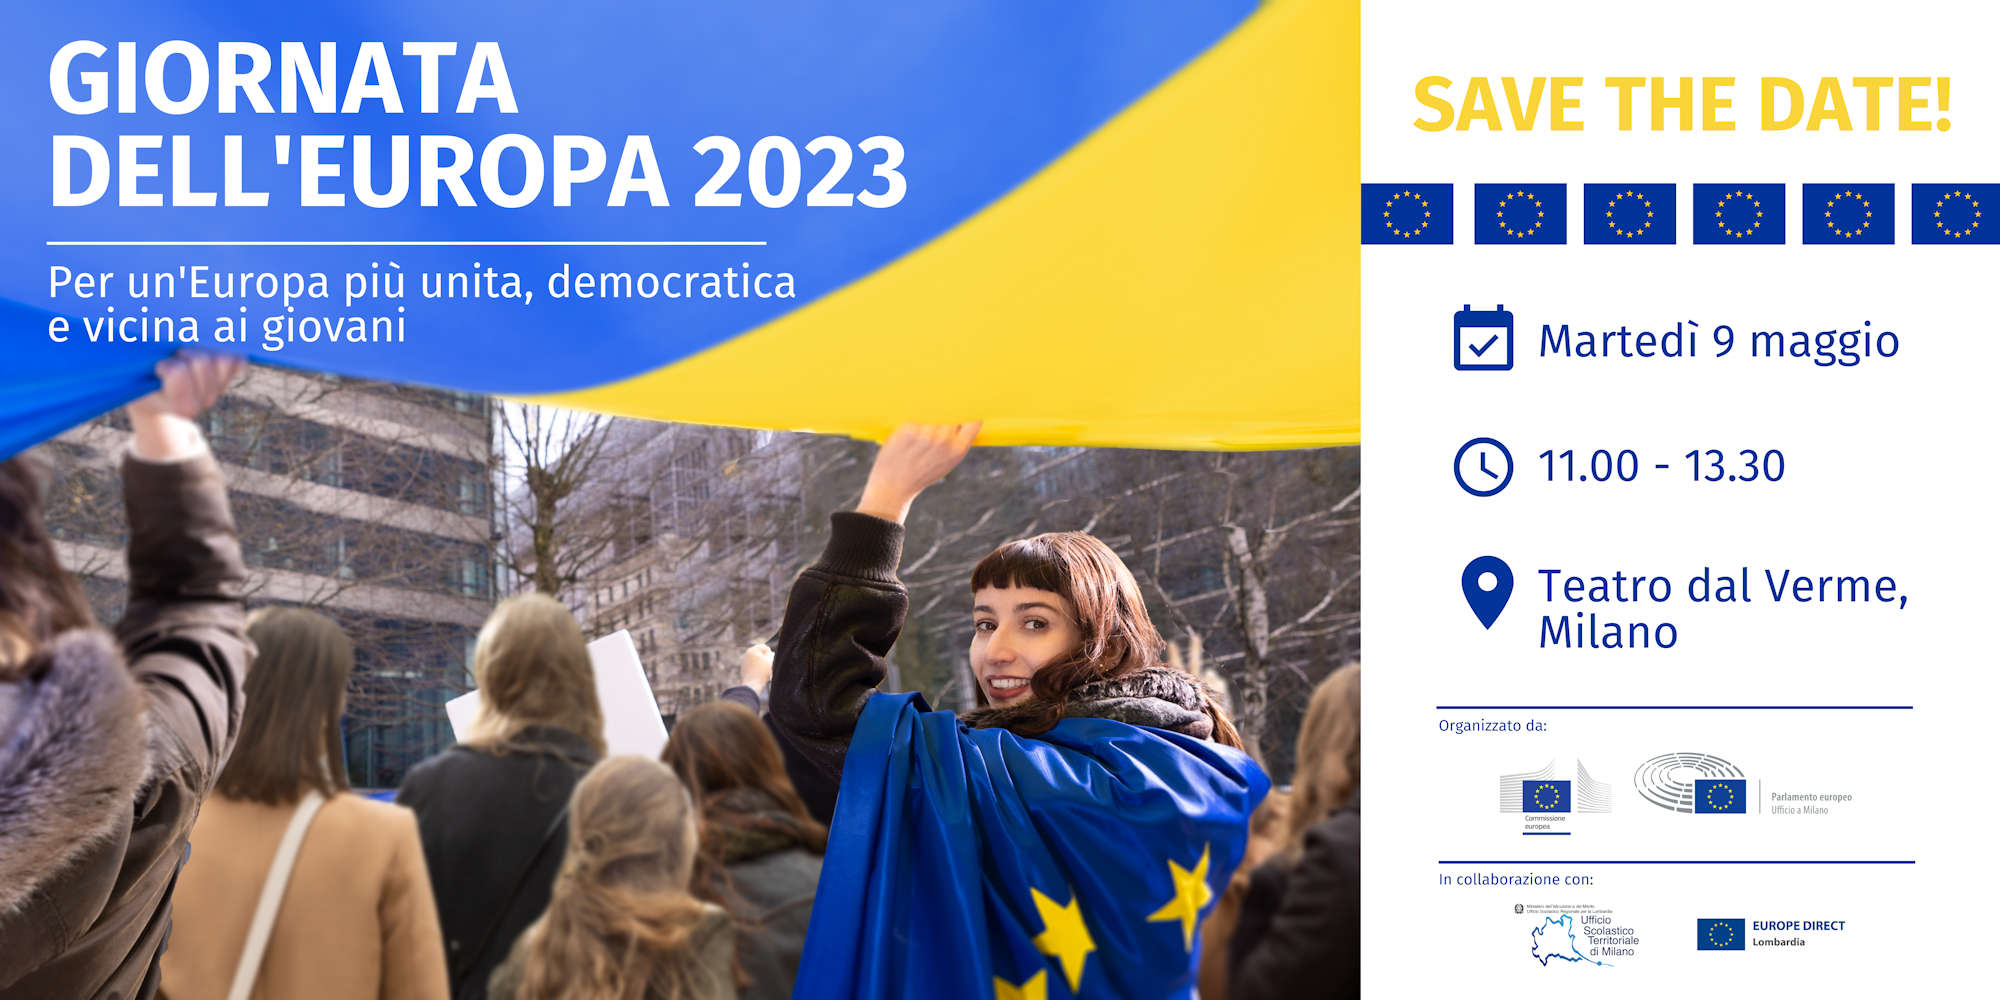 GIORNATA DELL'EUROPA 2023